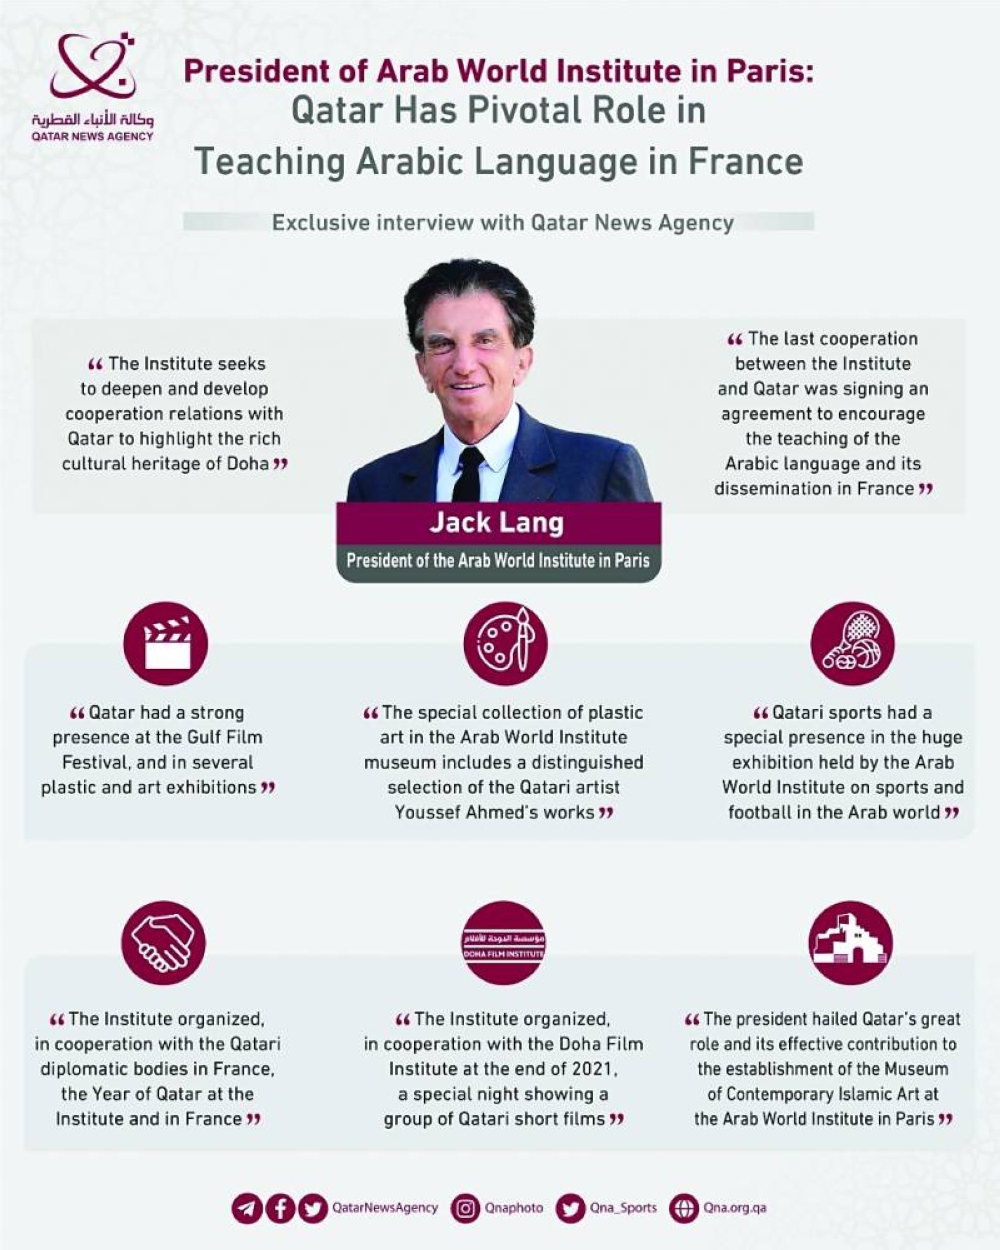 لعبت قطر دورًا أساسيًا في تدريس اللغة العربية في فرنسا